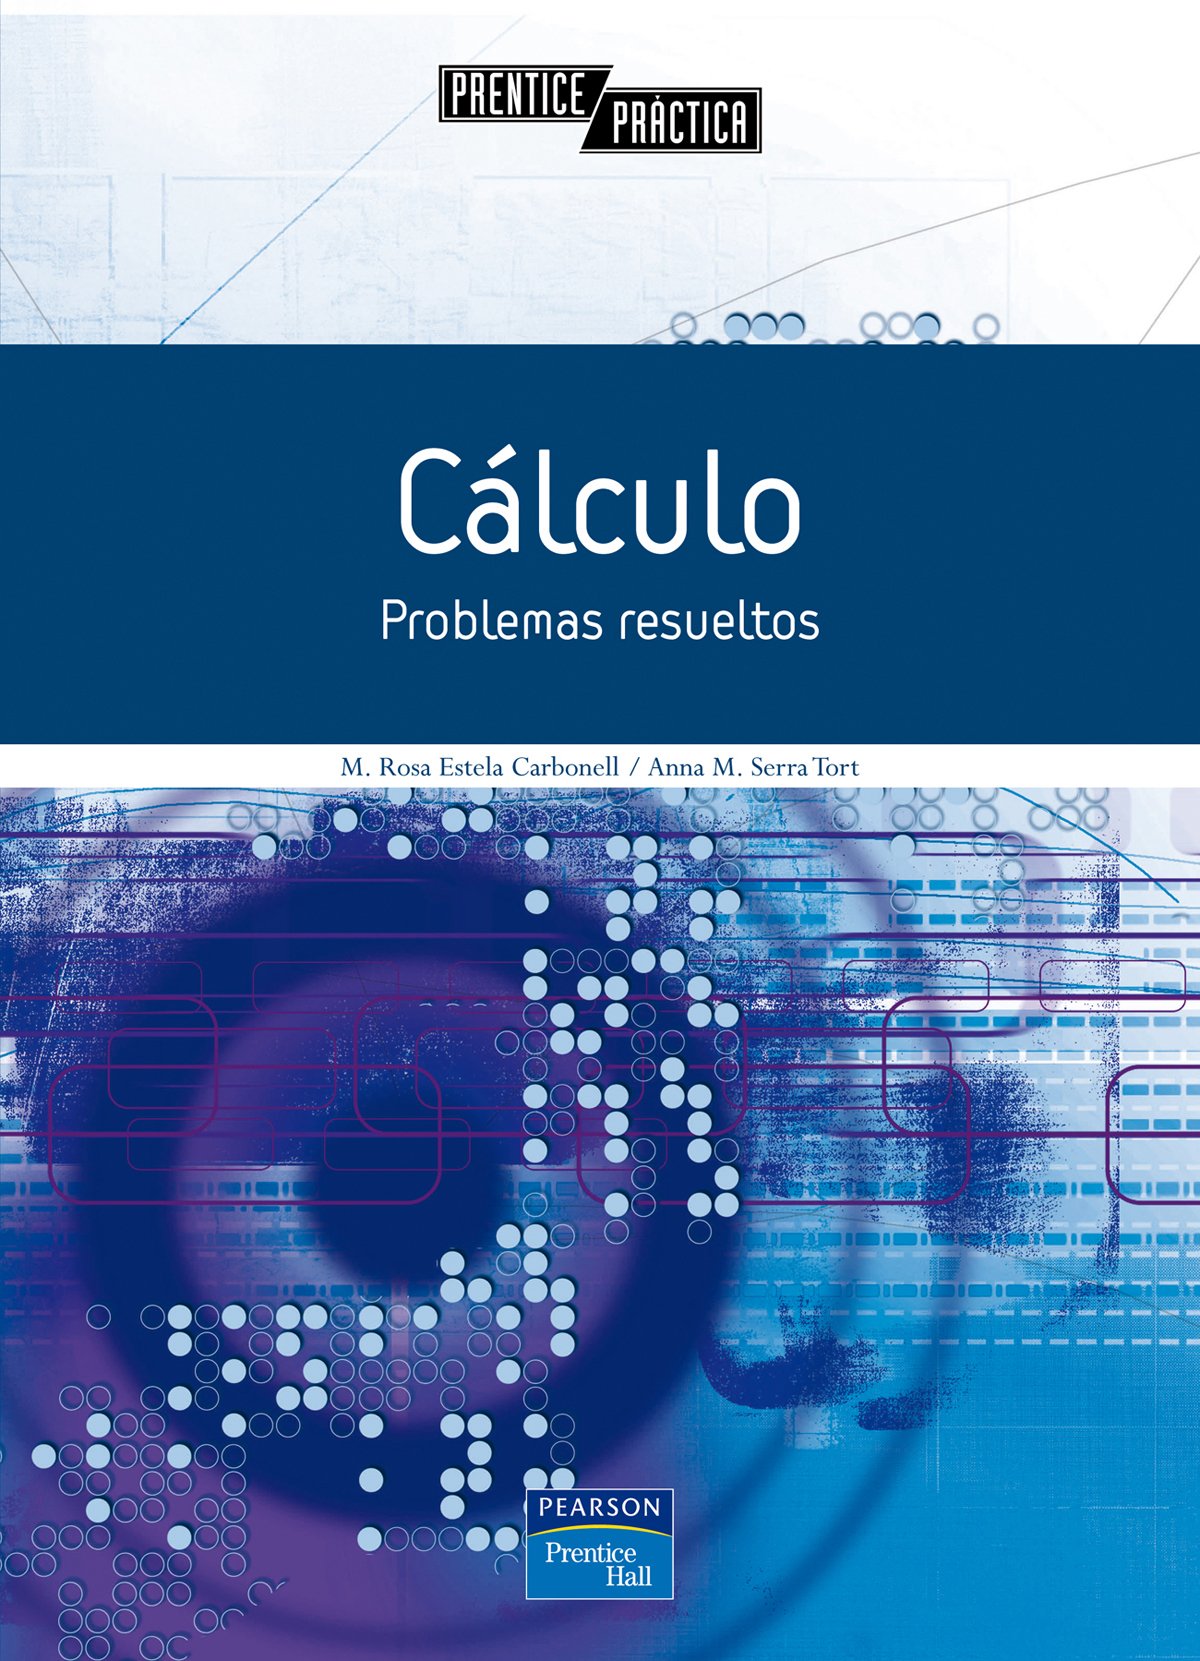 Imagen de portada del libro Cálculo